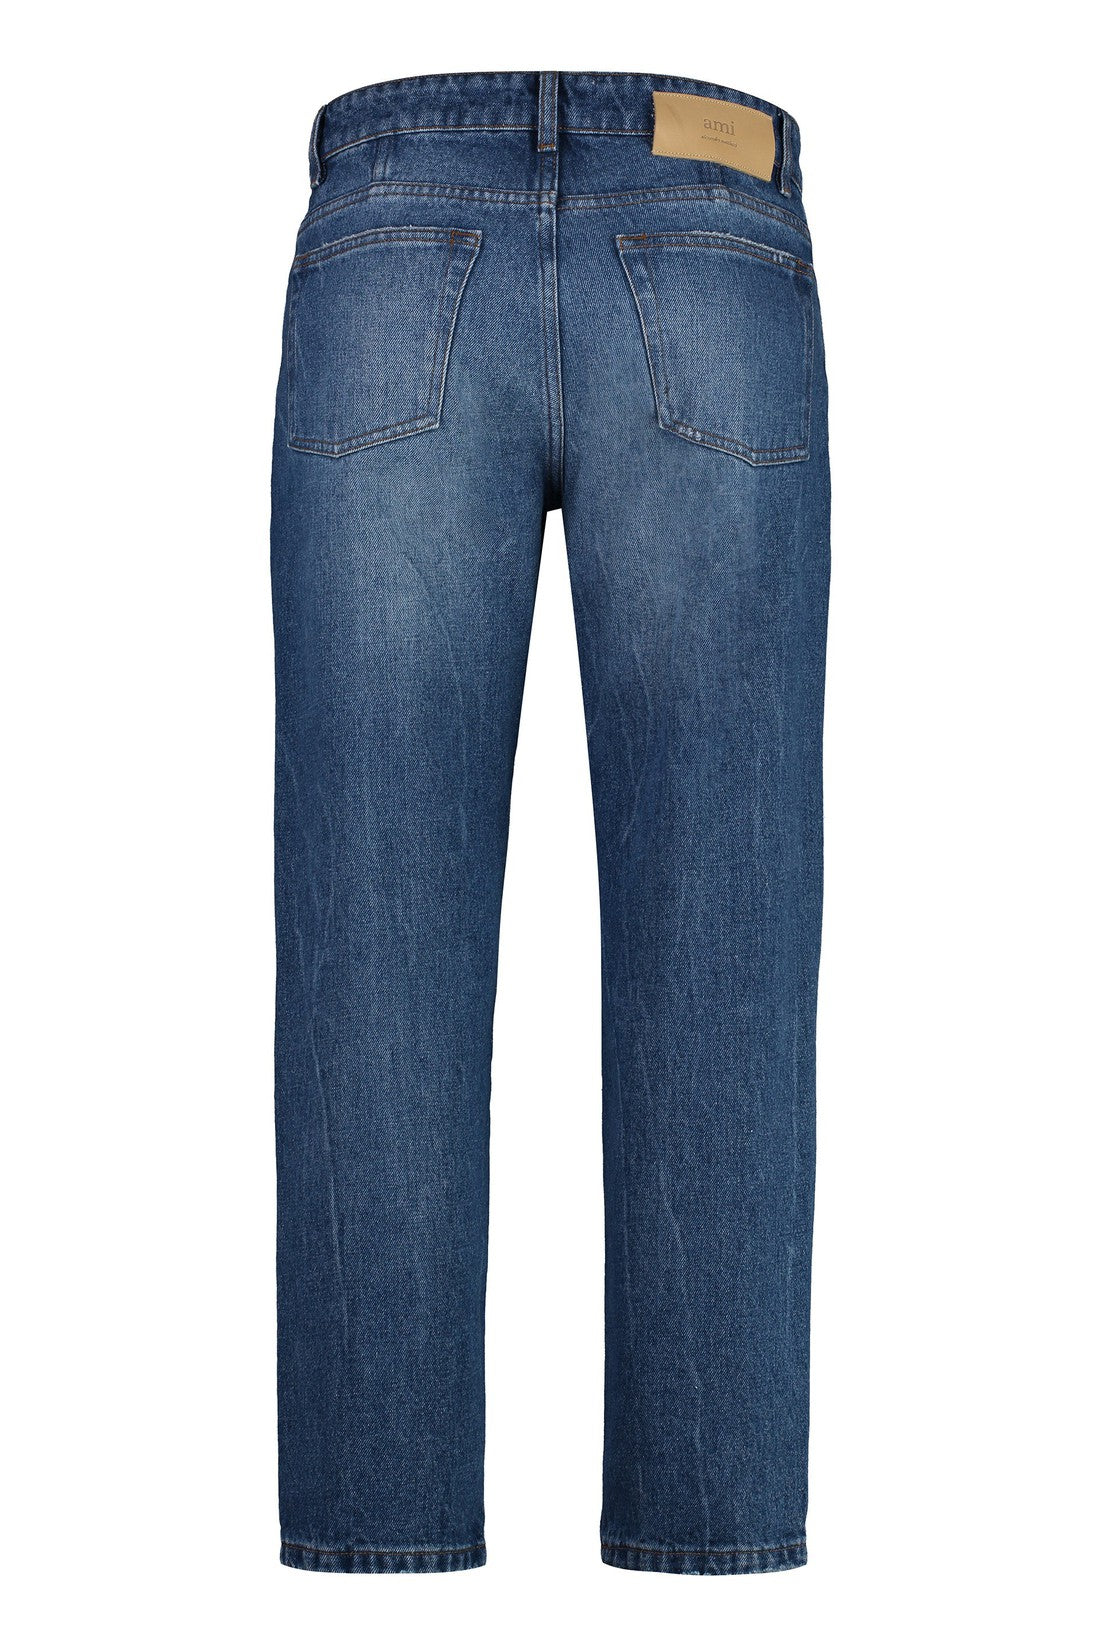 AMI PARIS-OUTLET-SALE-tapered fit jeans-ARCHIVIST